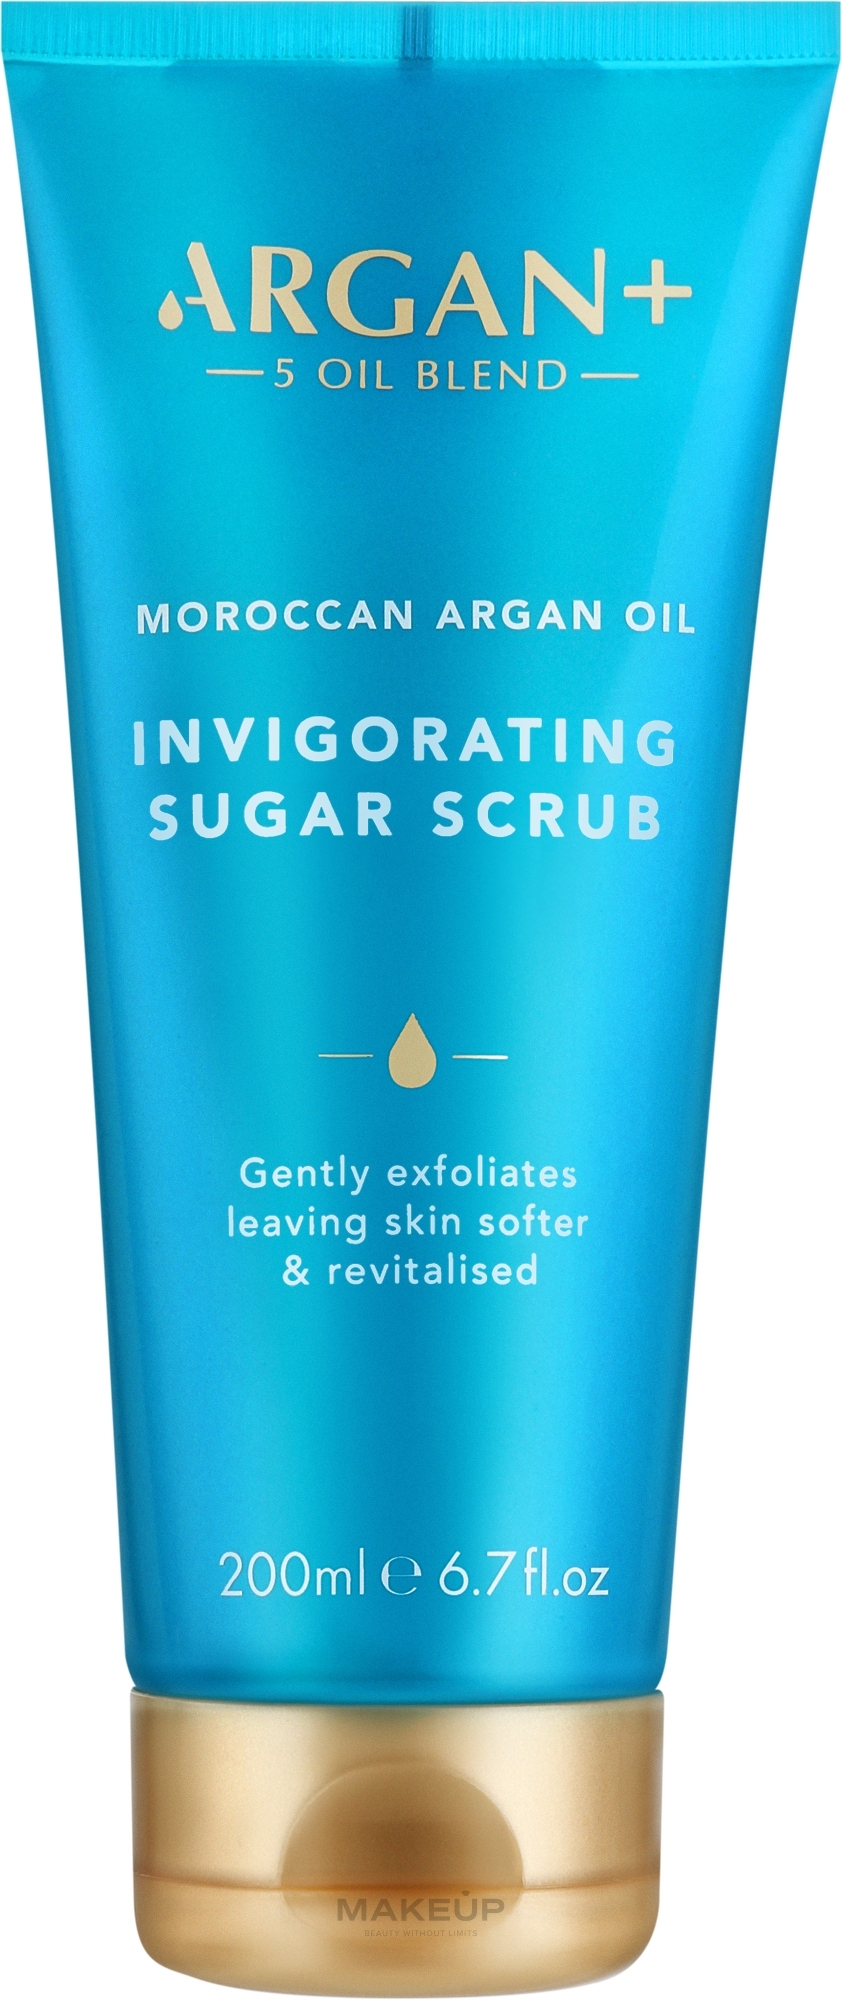 Скраб цукровий для тіла "Морокканська арганова олія" - Argan+ Moroccan Argan Oil Invigorating Sugar Scrub — фото 200ml